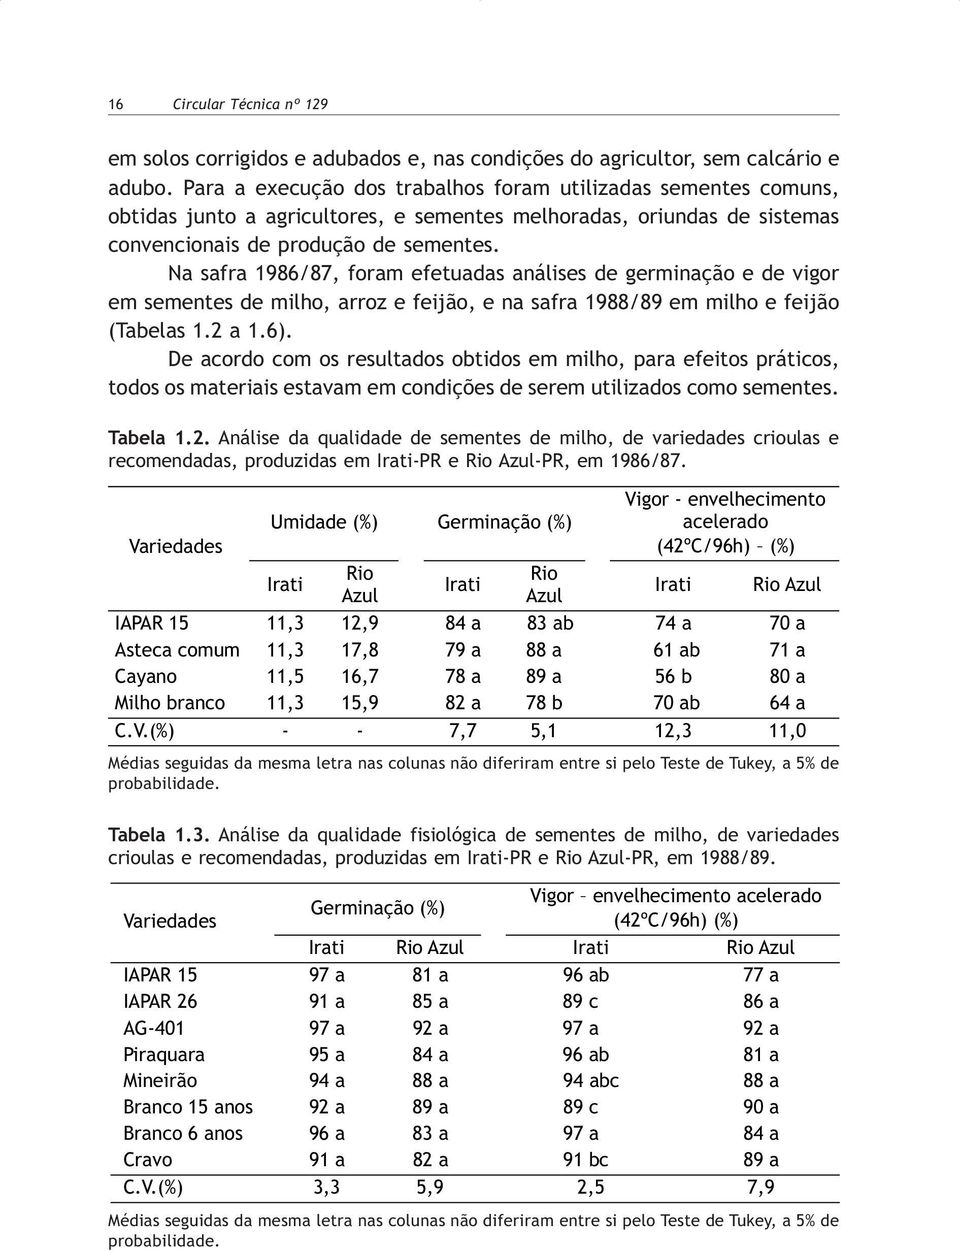 Na safra 1986/87, foram efetuadas análises de germinação e de vigor em sementes de milho, arroz e feijão, e na safra 1988/89 em milho e feijão (Tabelas 1.2 a 1.6).